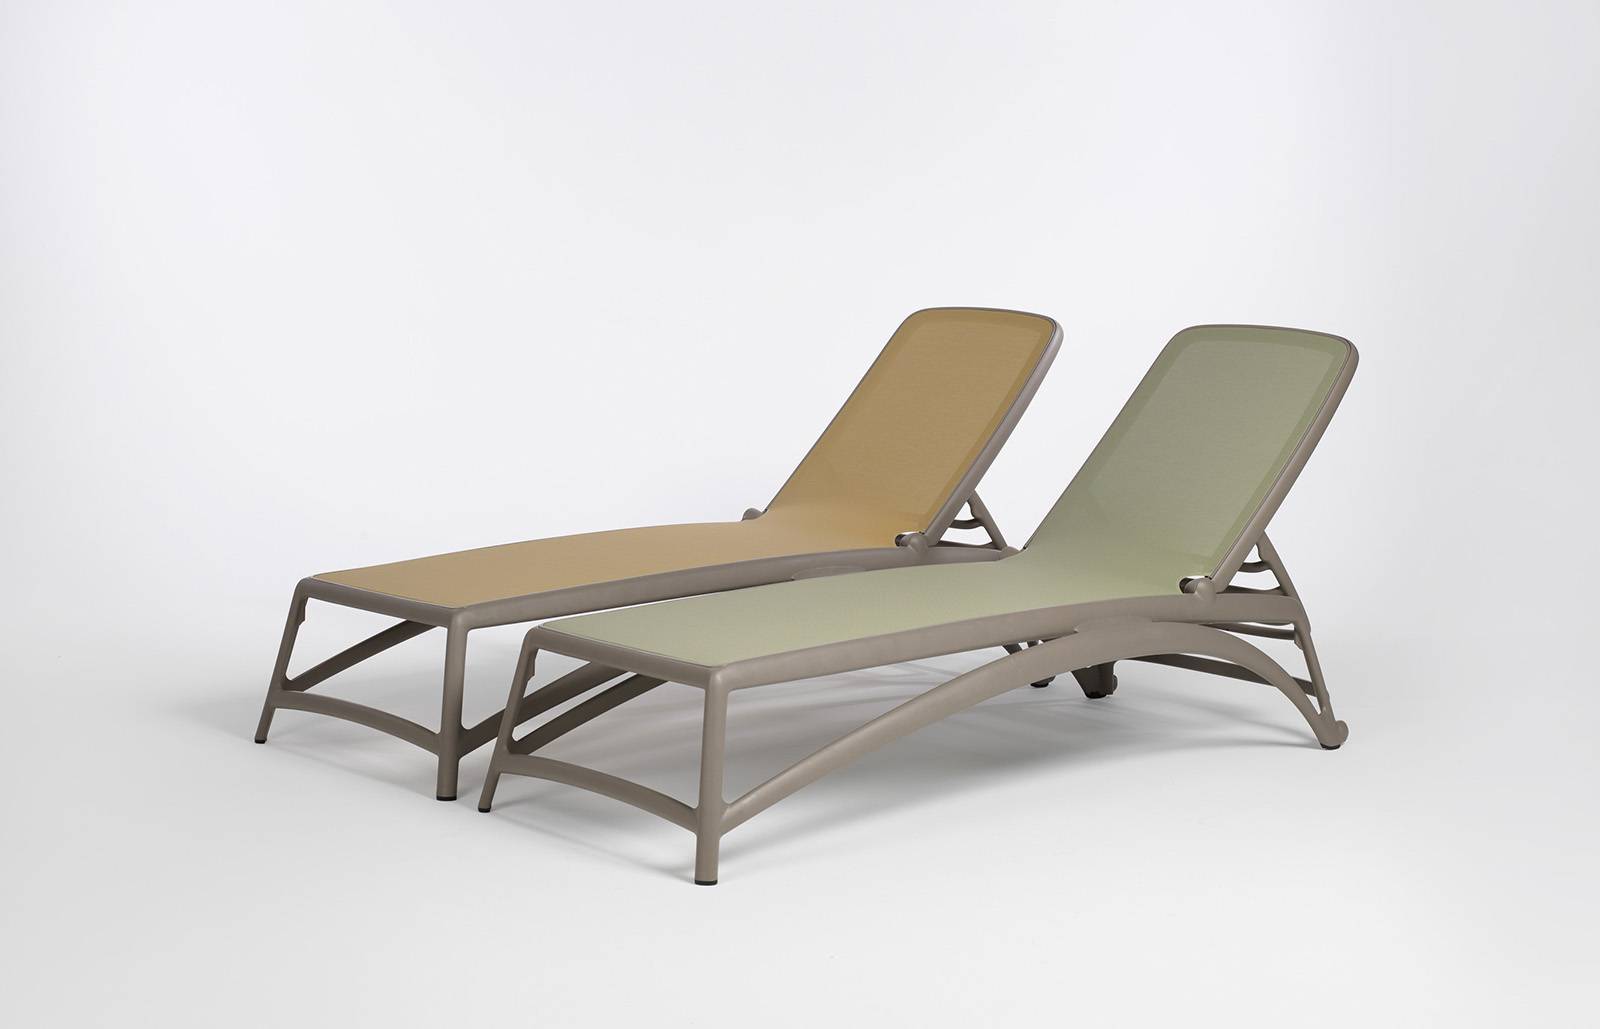 sancilio evotech molfetta - forniture outdoor arredogiardino sedie sedute poltrone divani complementi lounge sostenibilità NARDI